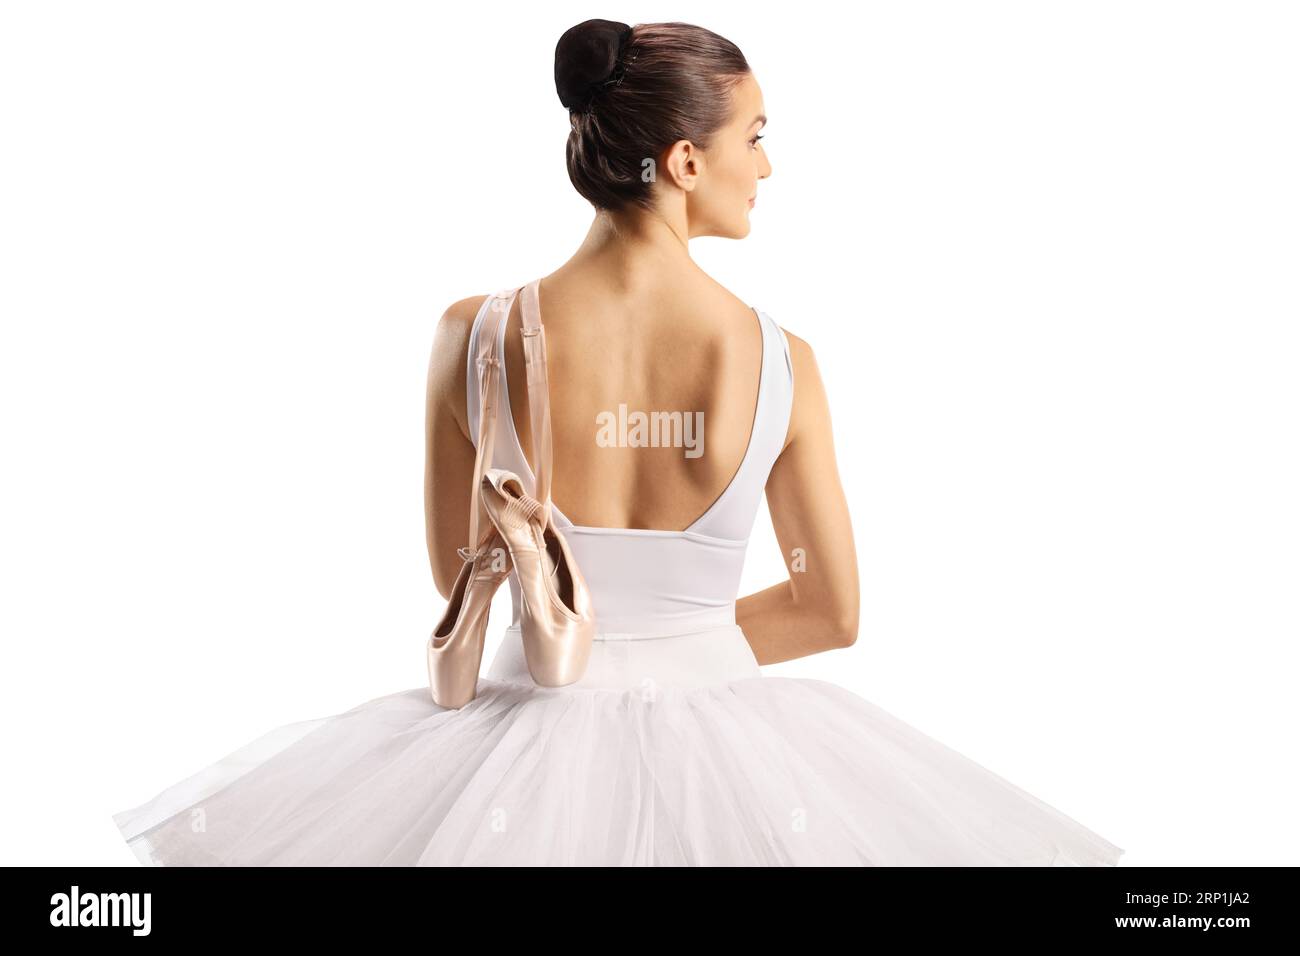 Rückansicht einer Ballerina in einem weißen Tutu-Kleid mit Ballettschuhen auf der Schulter isoliert auf weißem Hintergrund Stockfoto